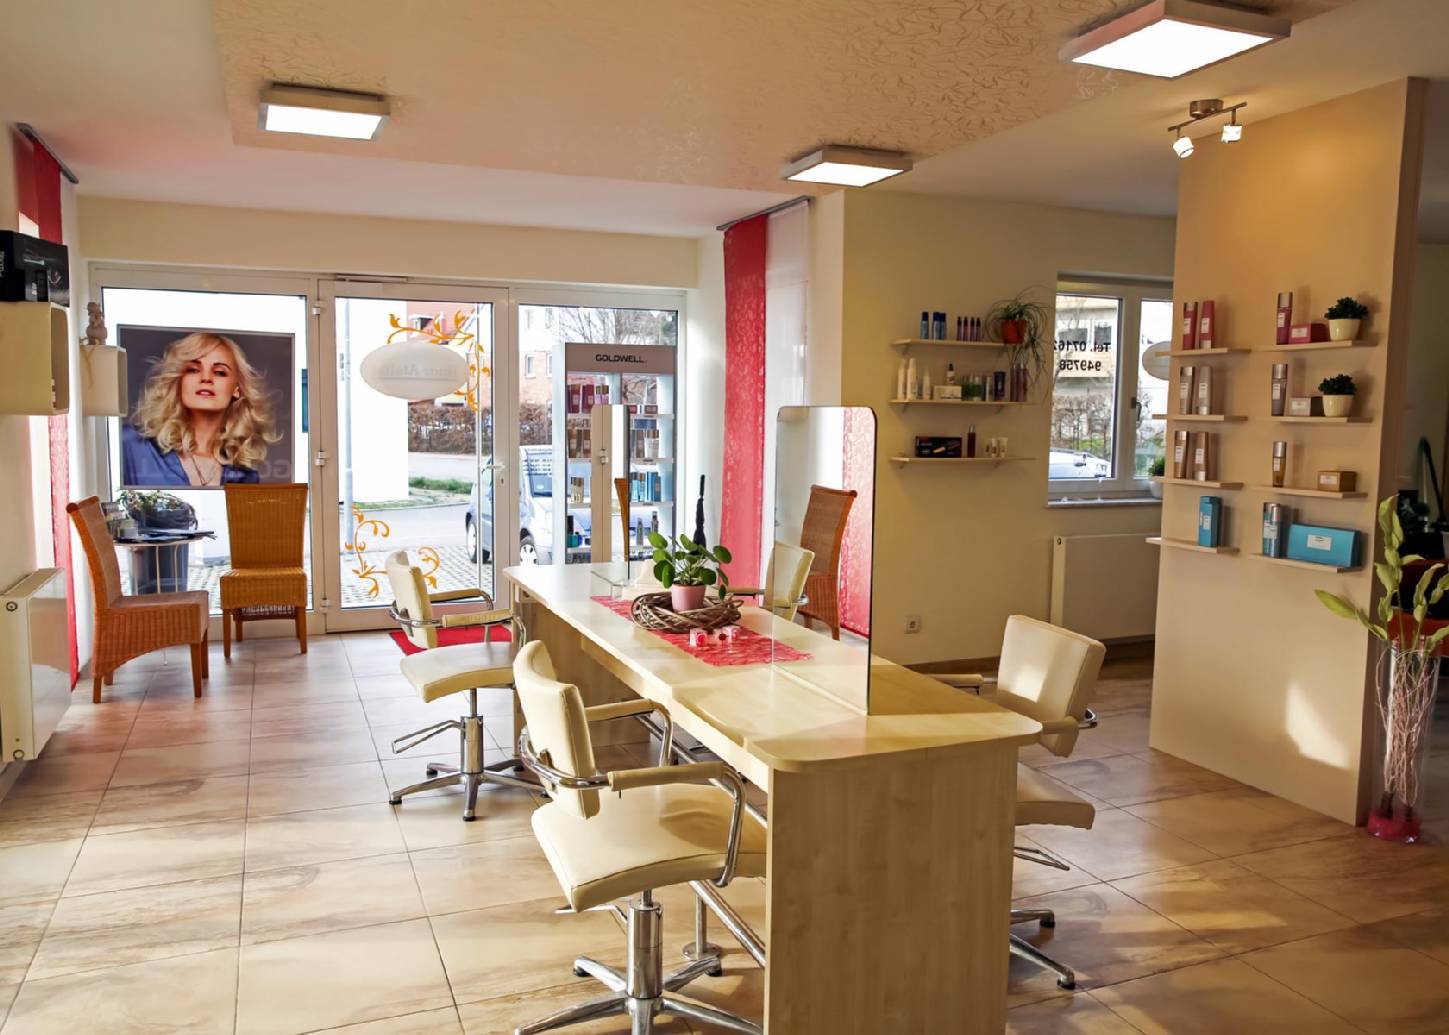 Unser modern eingerichteter Friseur-Salon in Salach lädt Sie herzlich ein